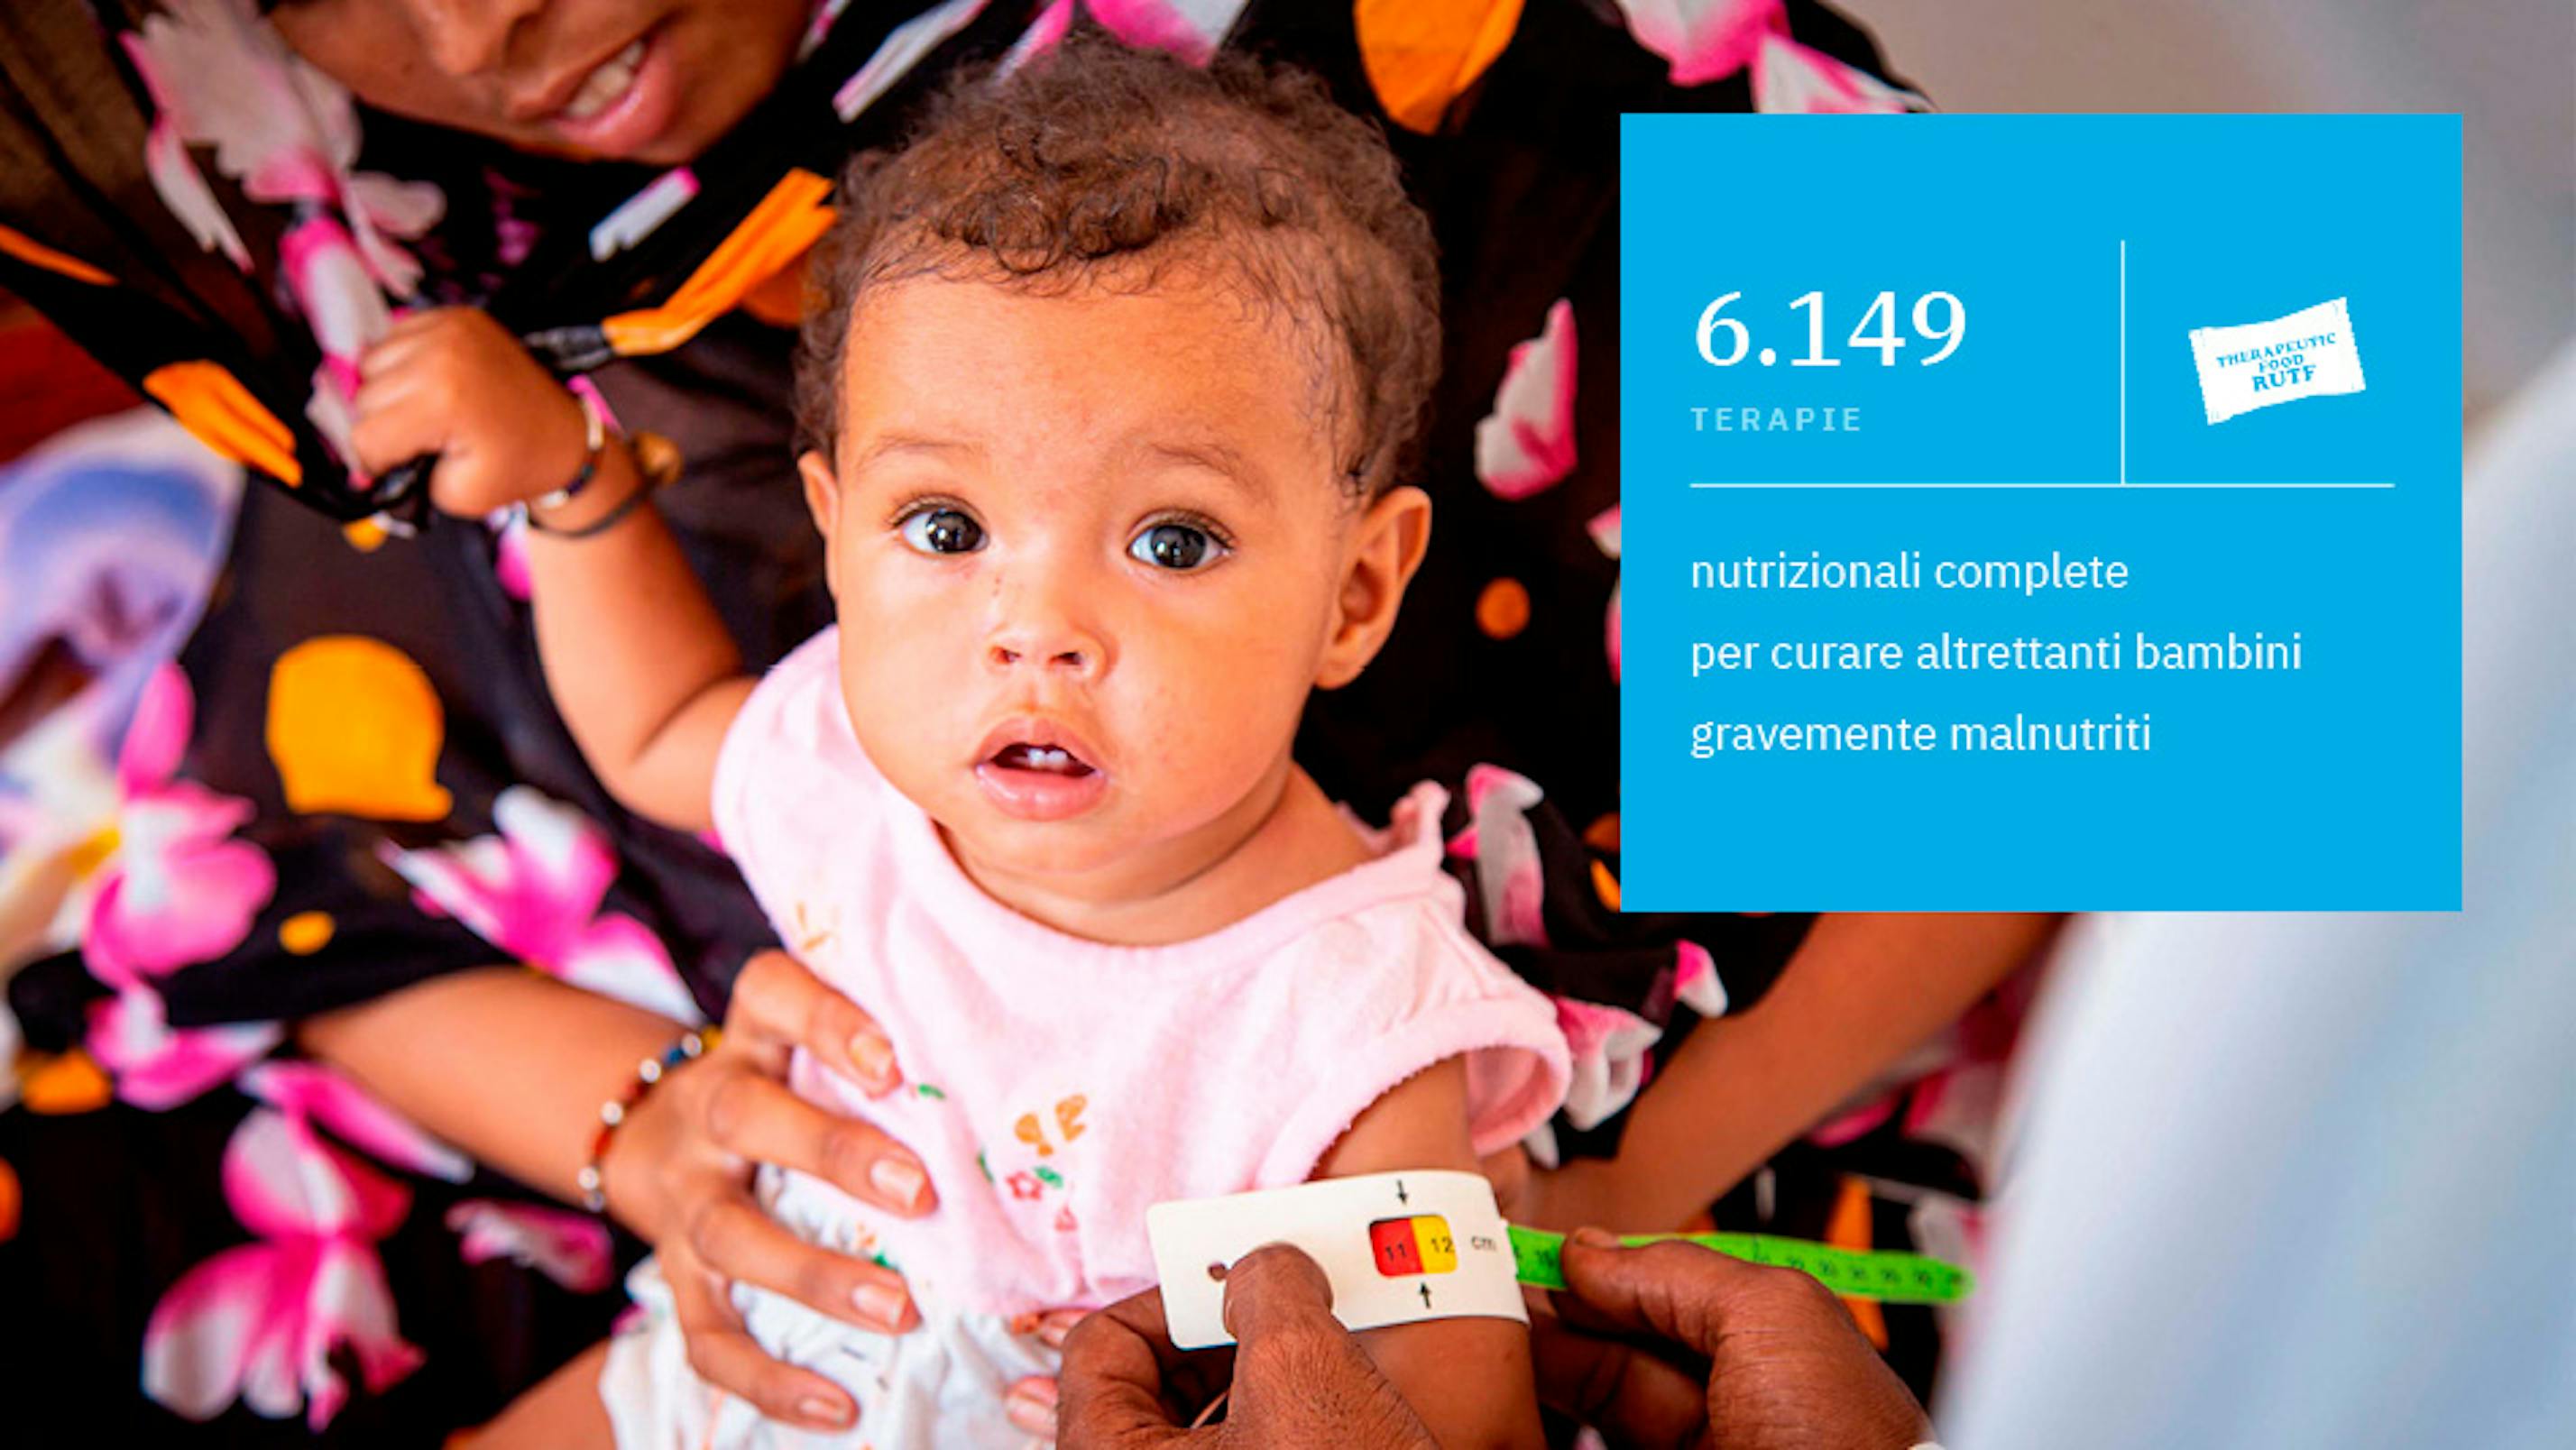 Ogni giorno l'UNICEF Italia ha raccolto 237.534 euro, l'equivalente di 6.149 terapie nutrizionali